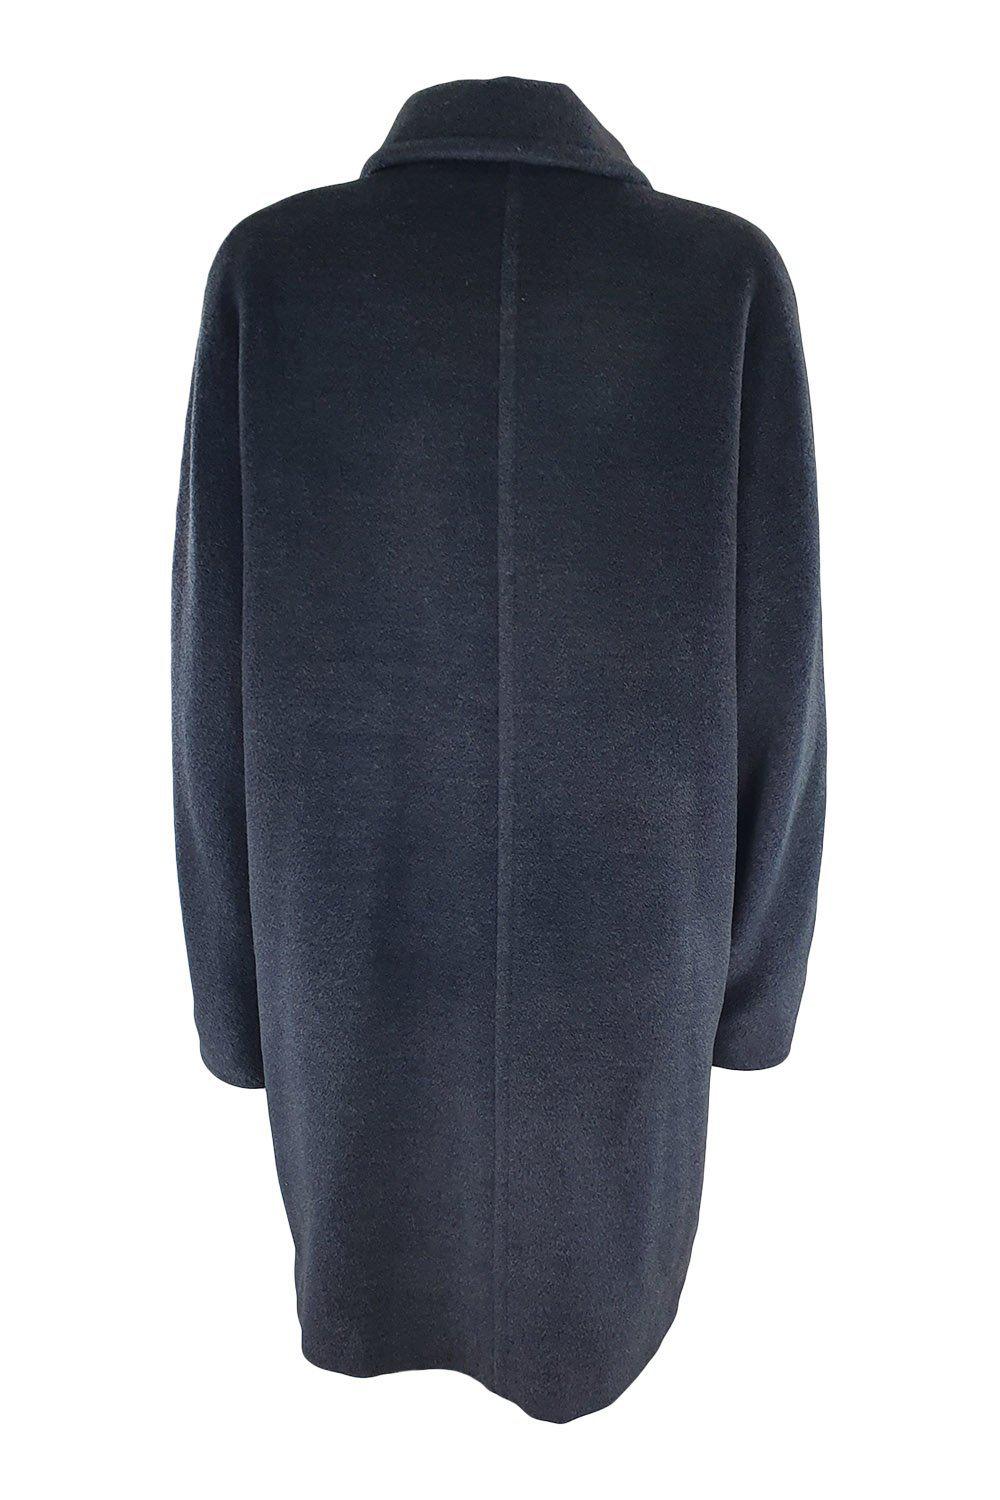 MAX MARA Grey Wool and Cashmere Blend Overcoat (UK 12)-Max Mara-The Freperie